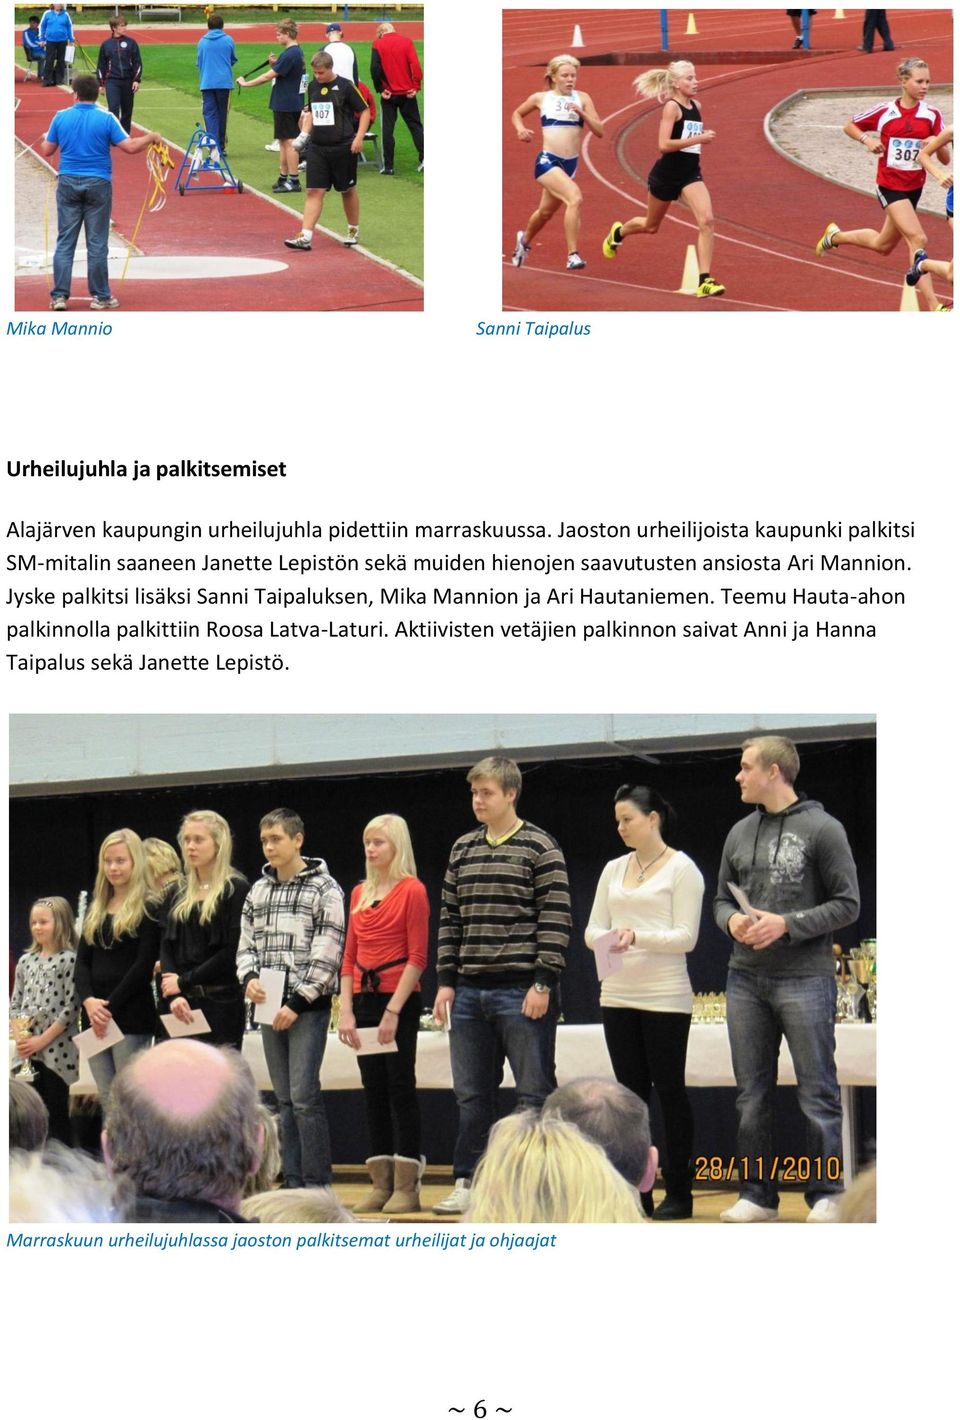 Jyske palkitsi lisäksi Sanni Taipaluksen, Mika Mannion ja Ari Hautaniemen. Teemu Hauta-ahon palkinnolla palkittiin Roosa Latva-Laturi.